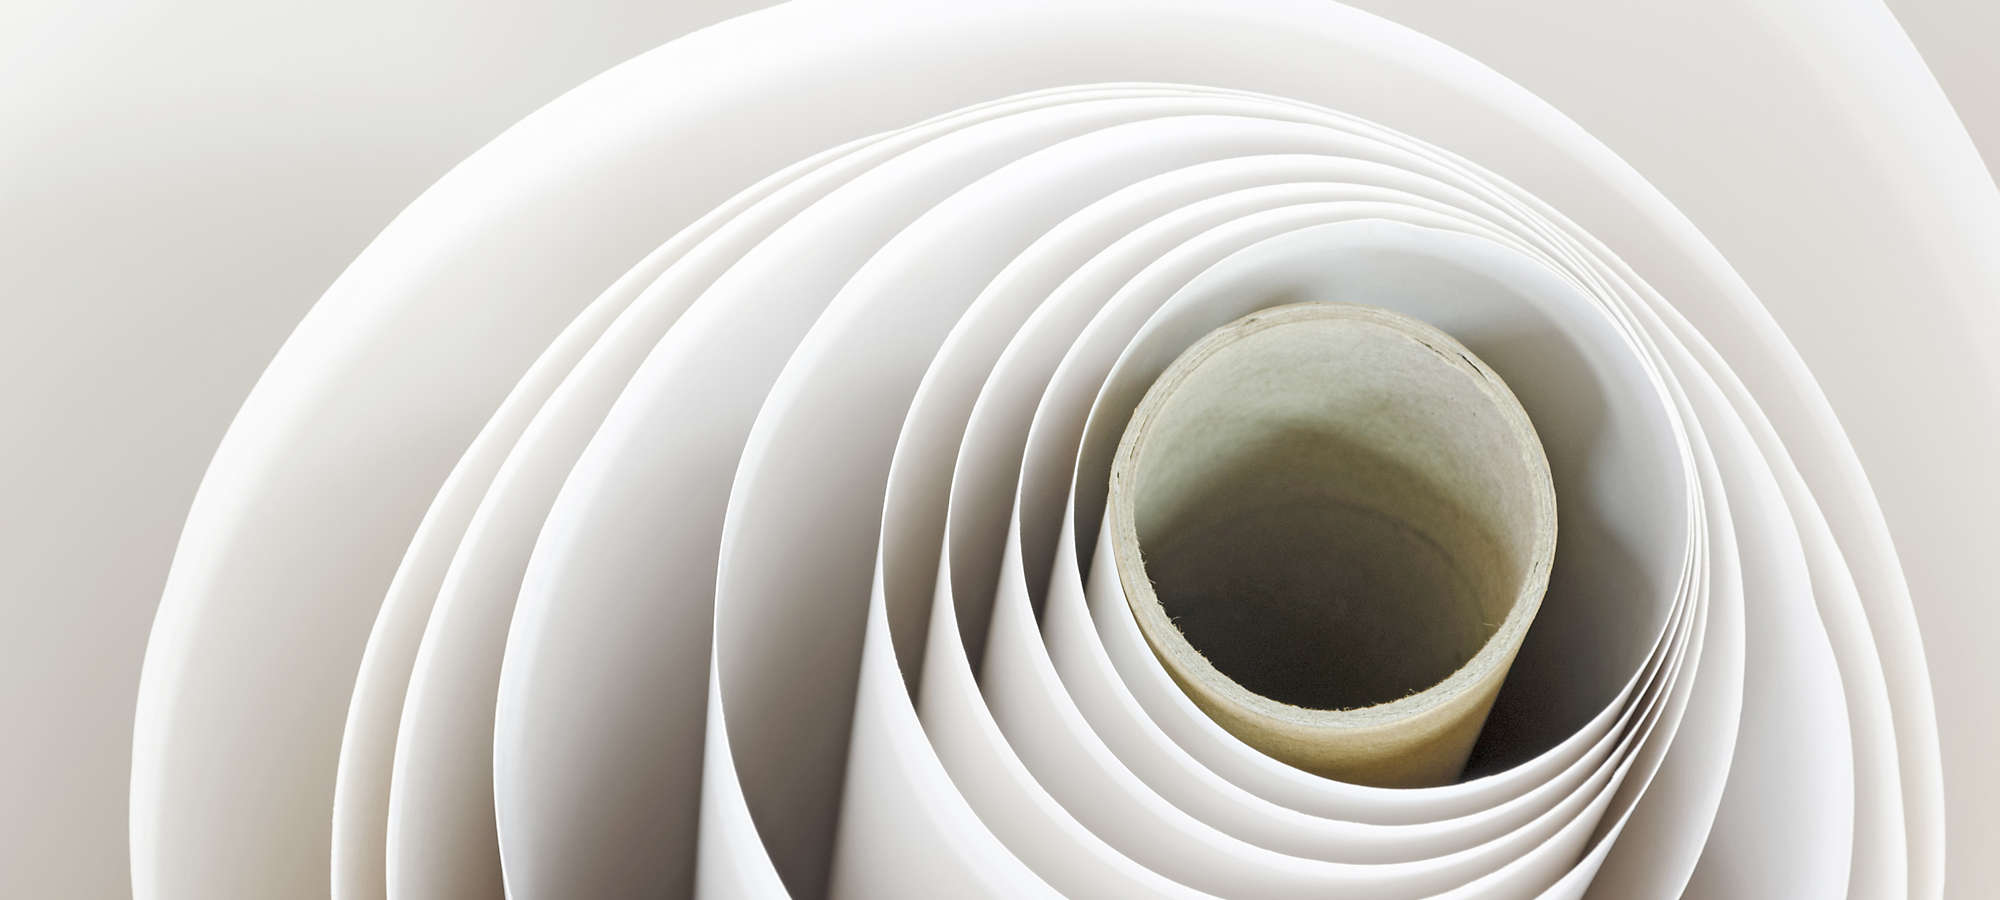 Paper roll spiral printshop